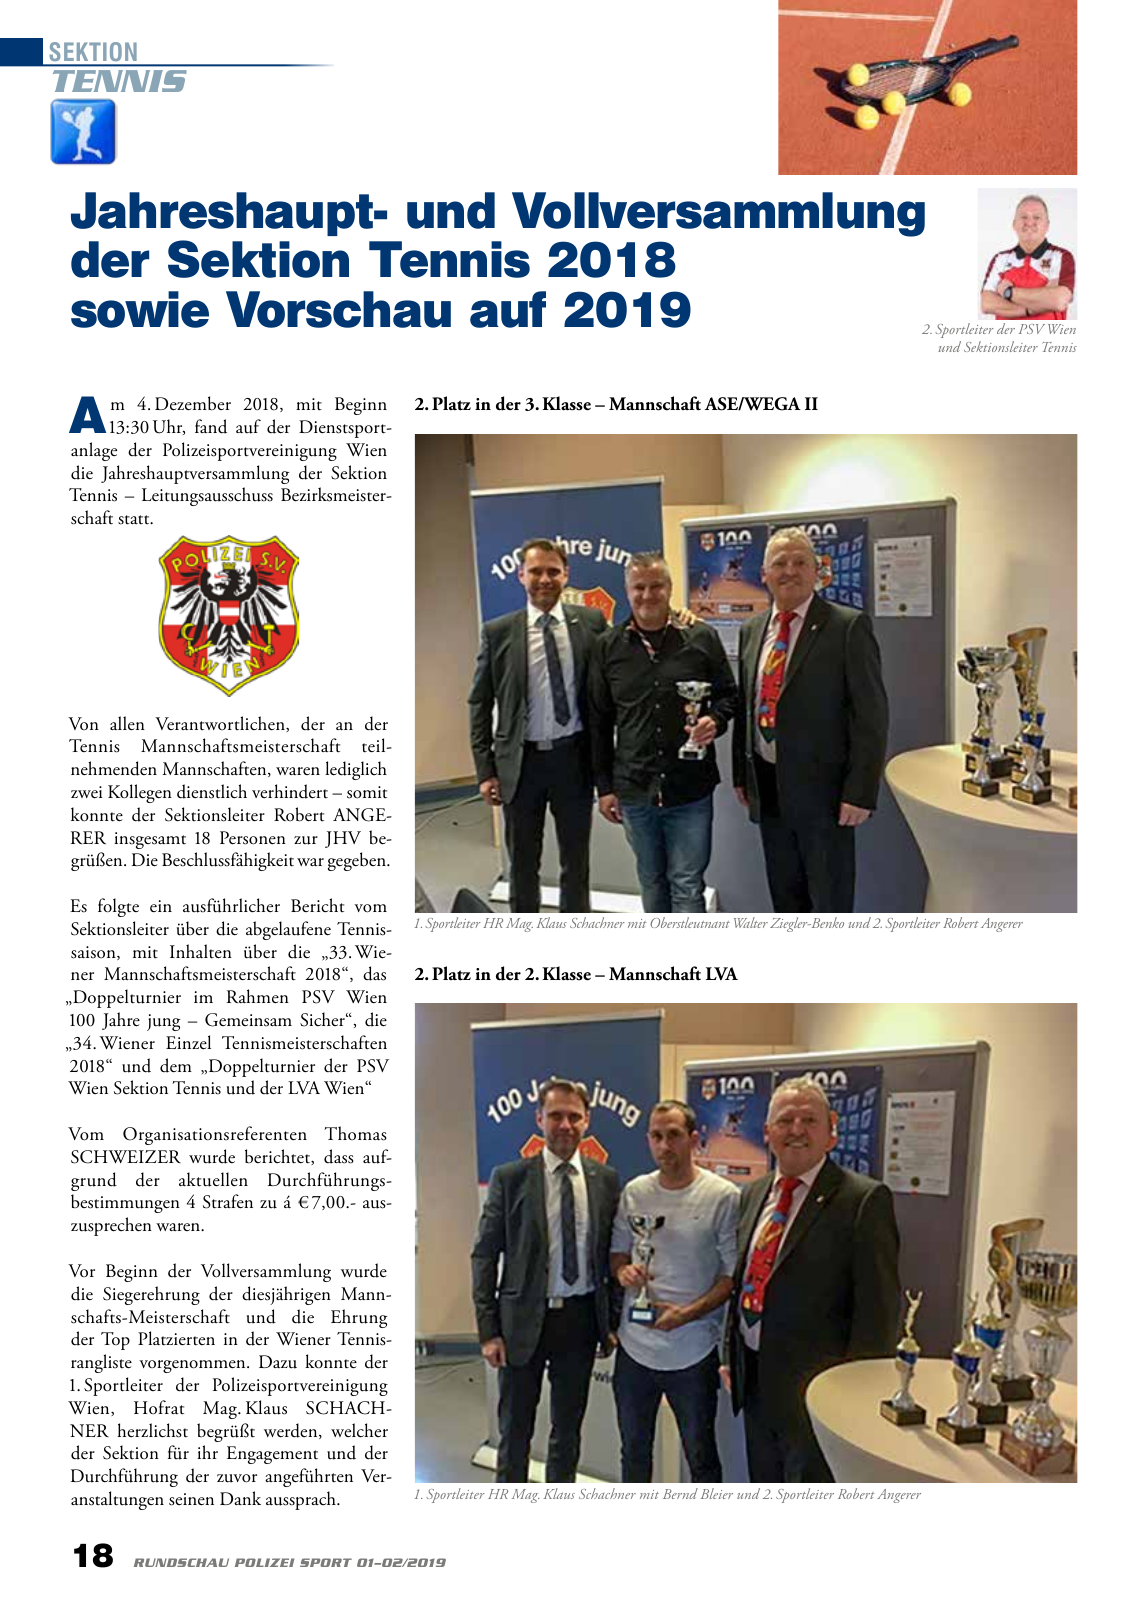 Vorschau Rundschau Polizei Sport 01-02/2019 Seite 18